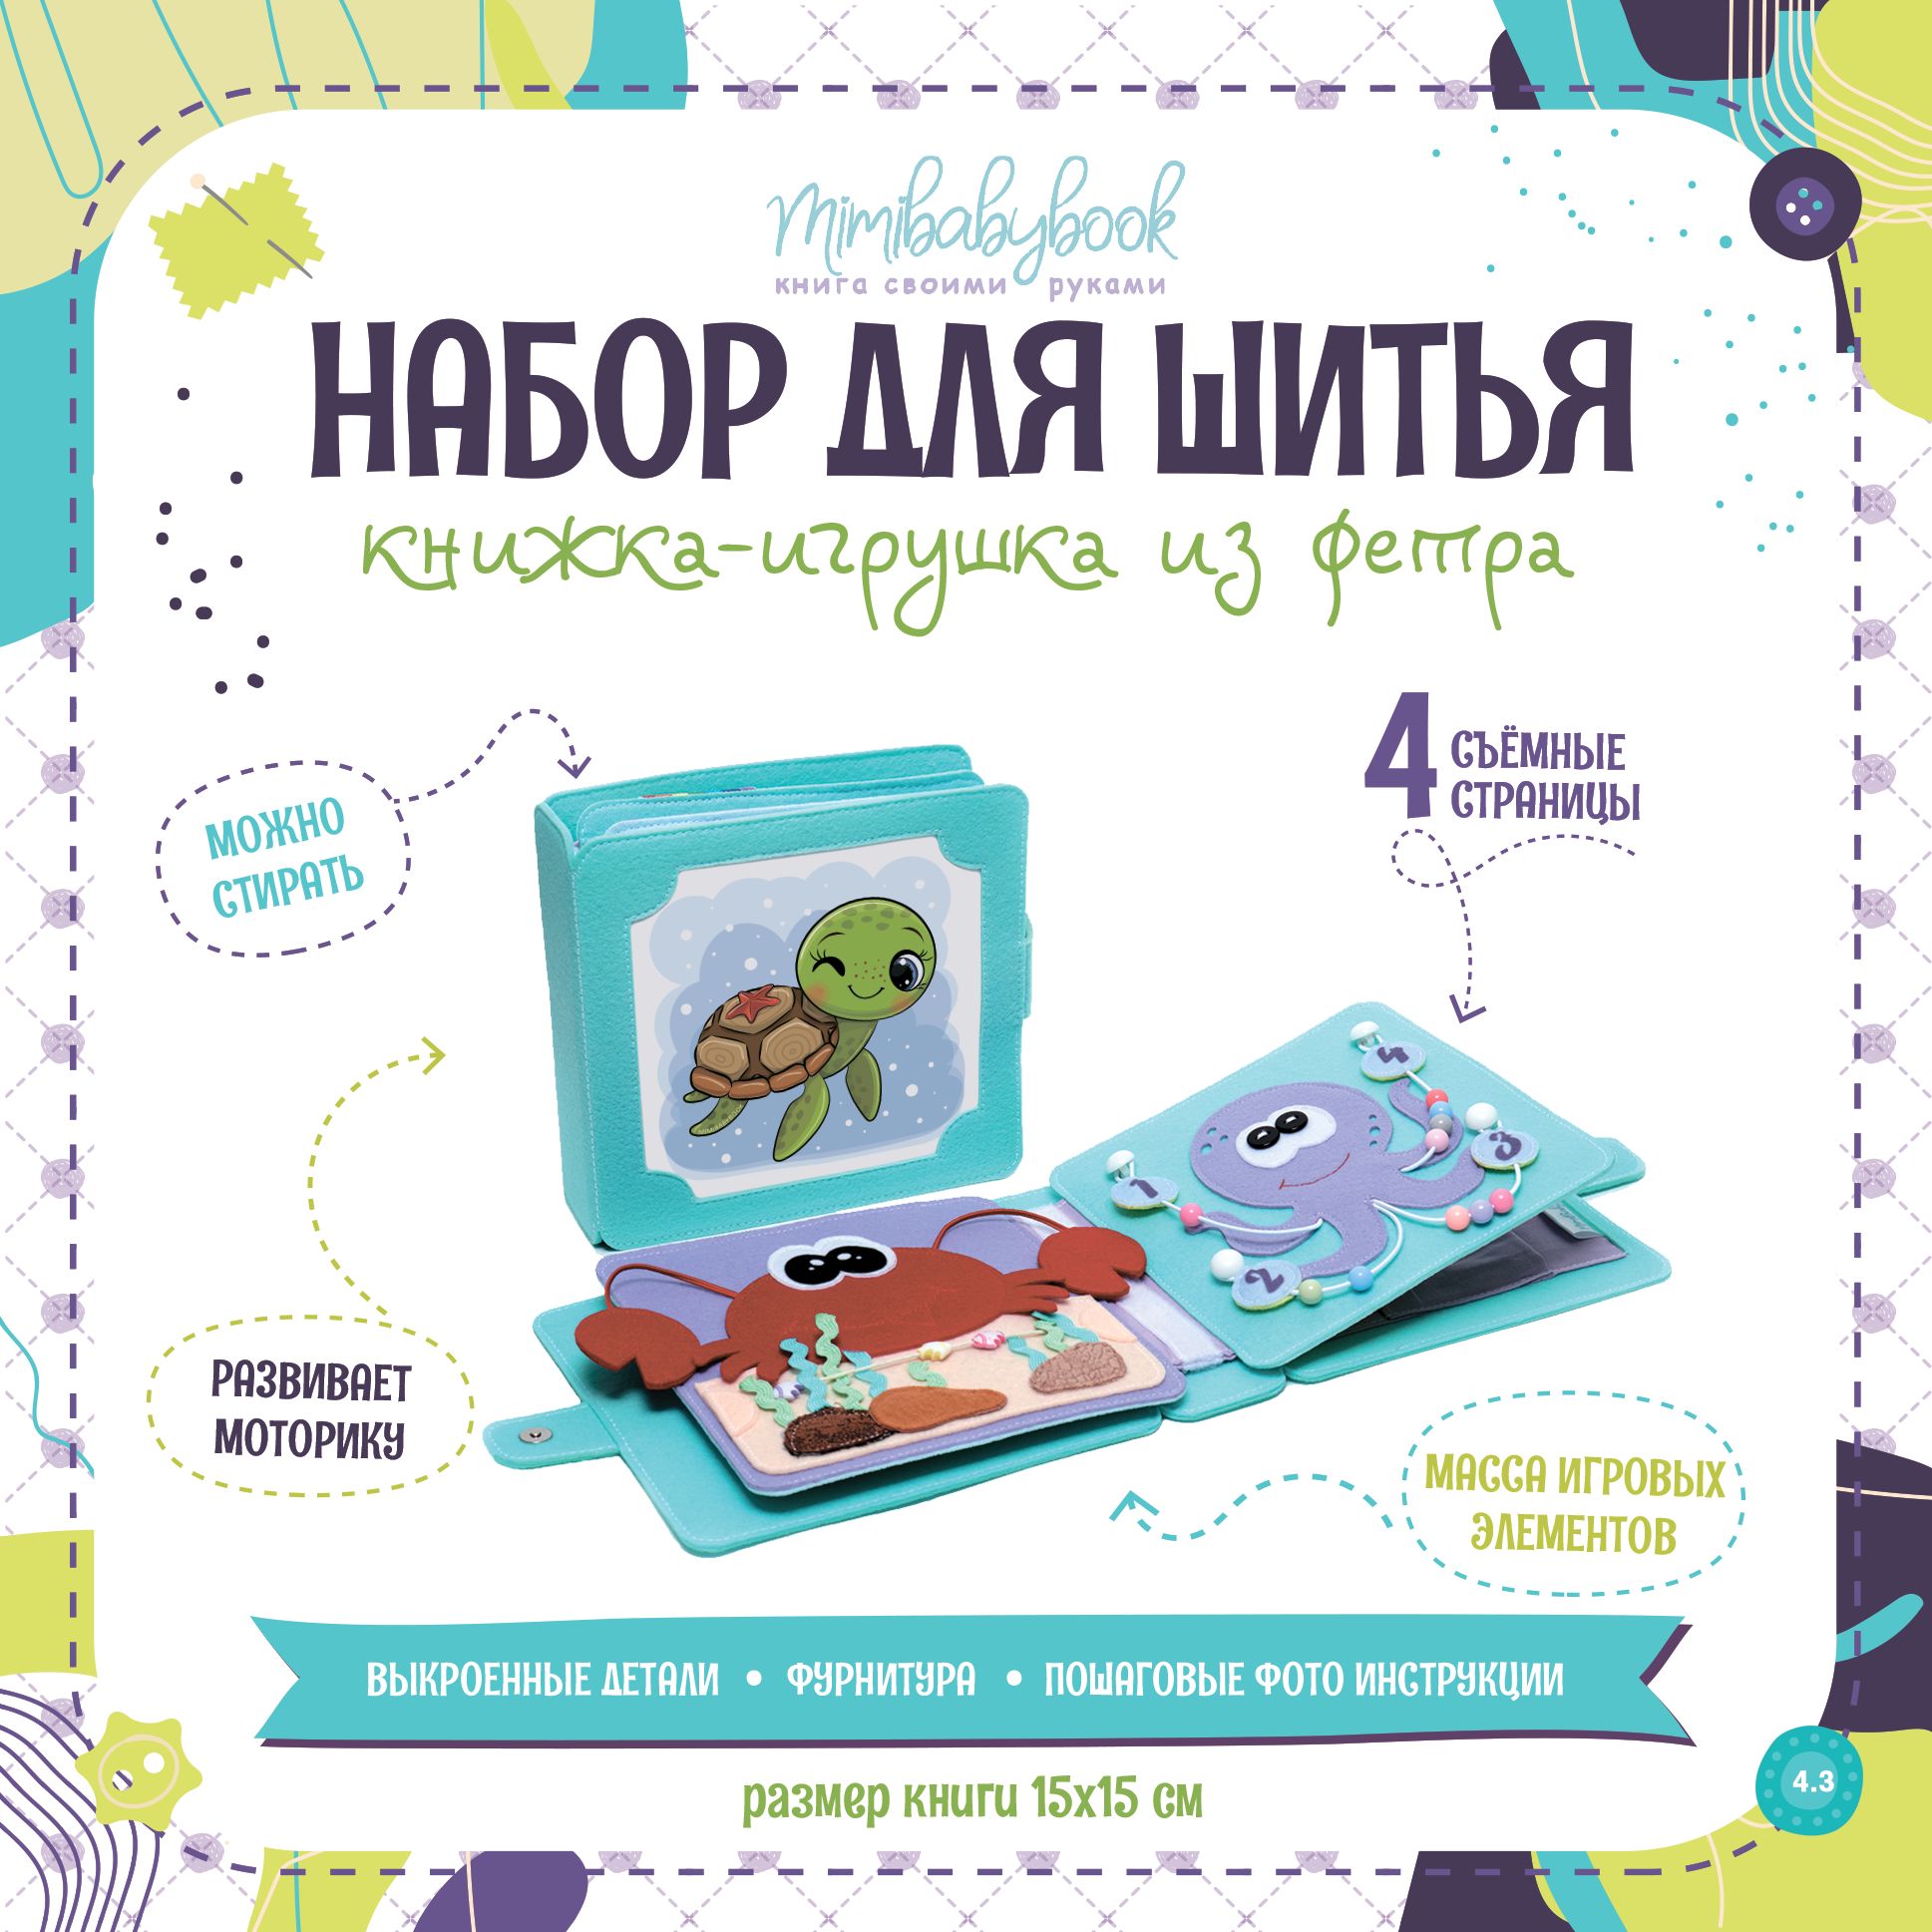 Детские игрушки и развивающие игры в Барнауле: б/у и новые